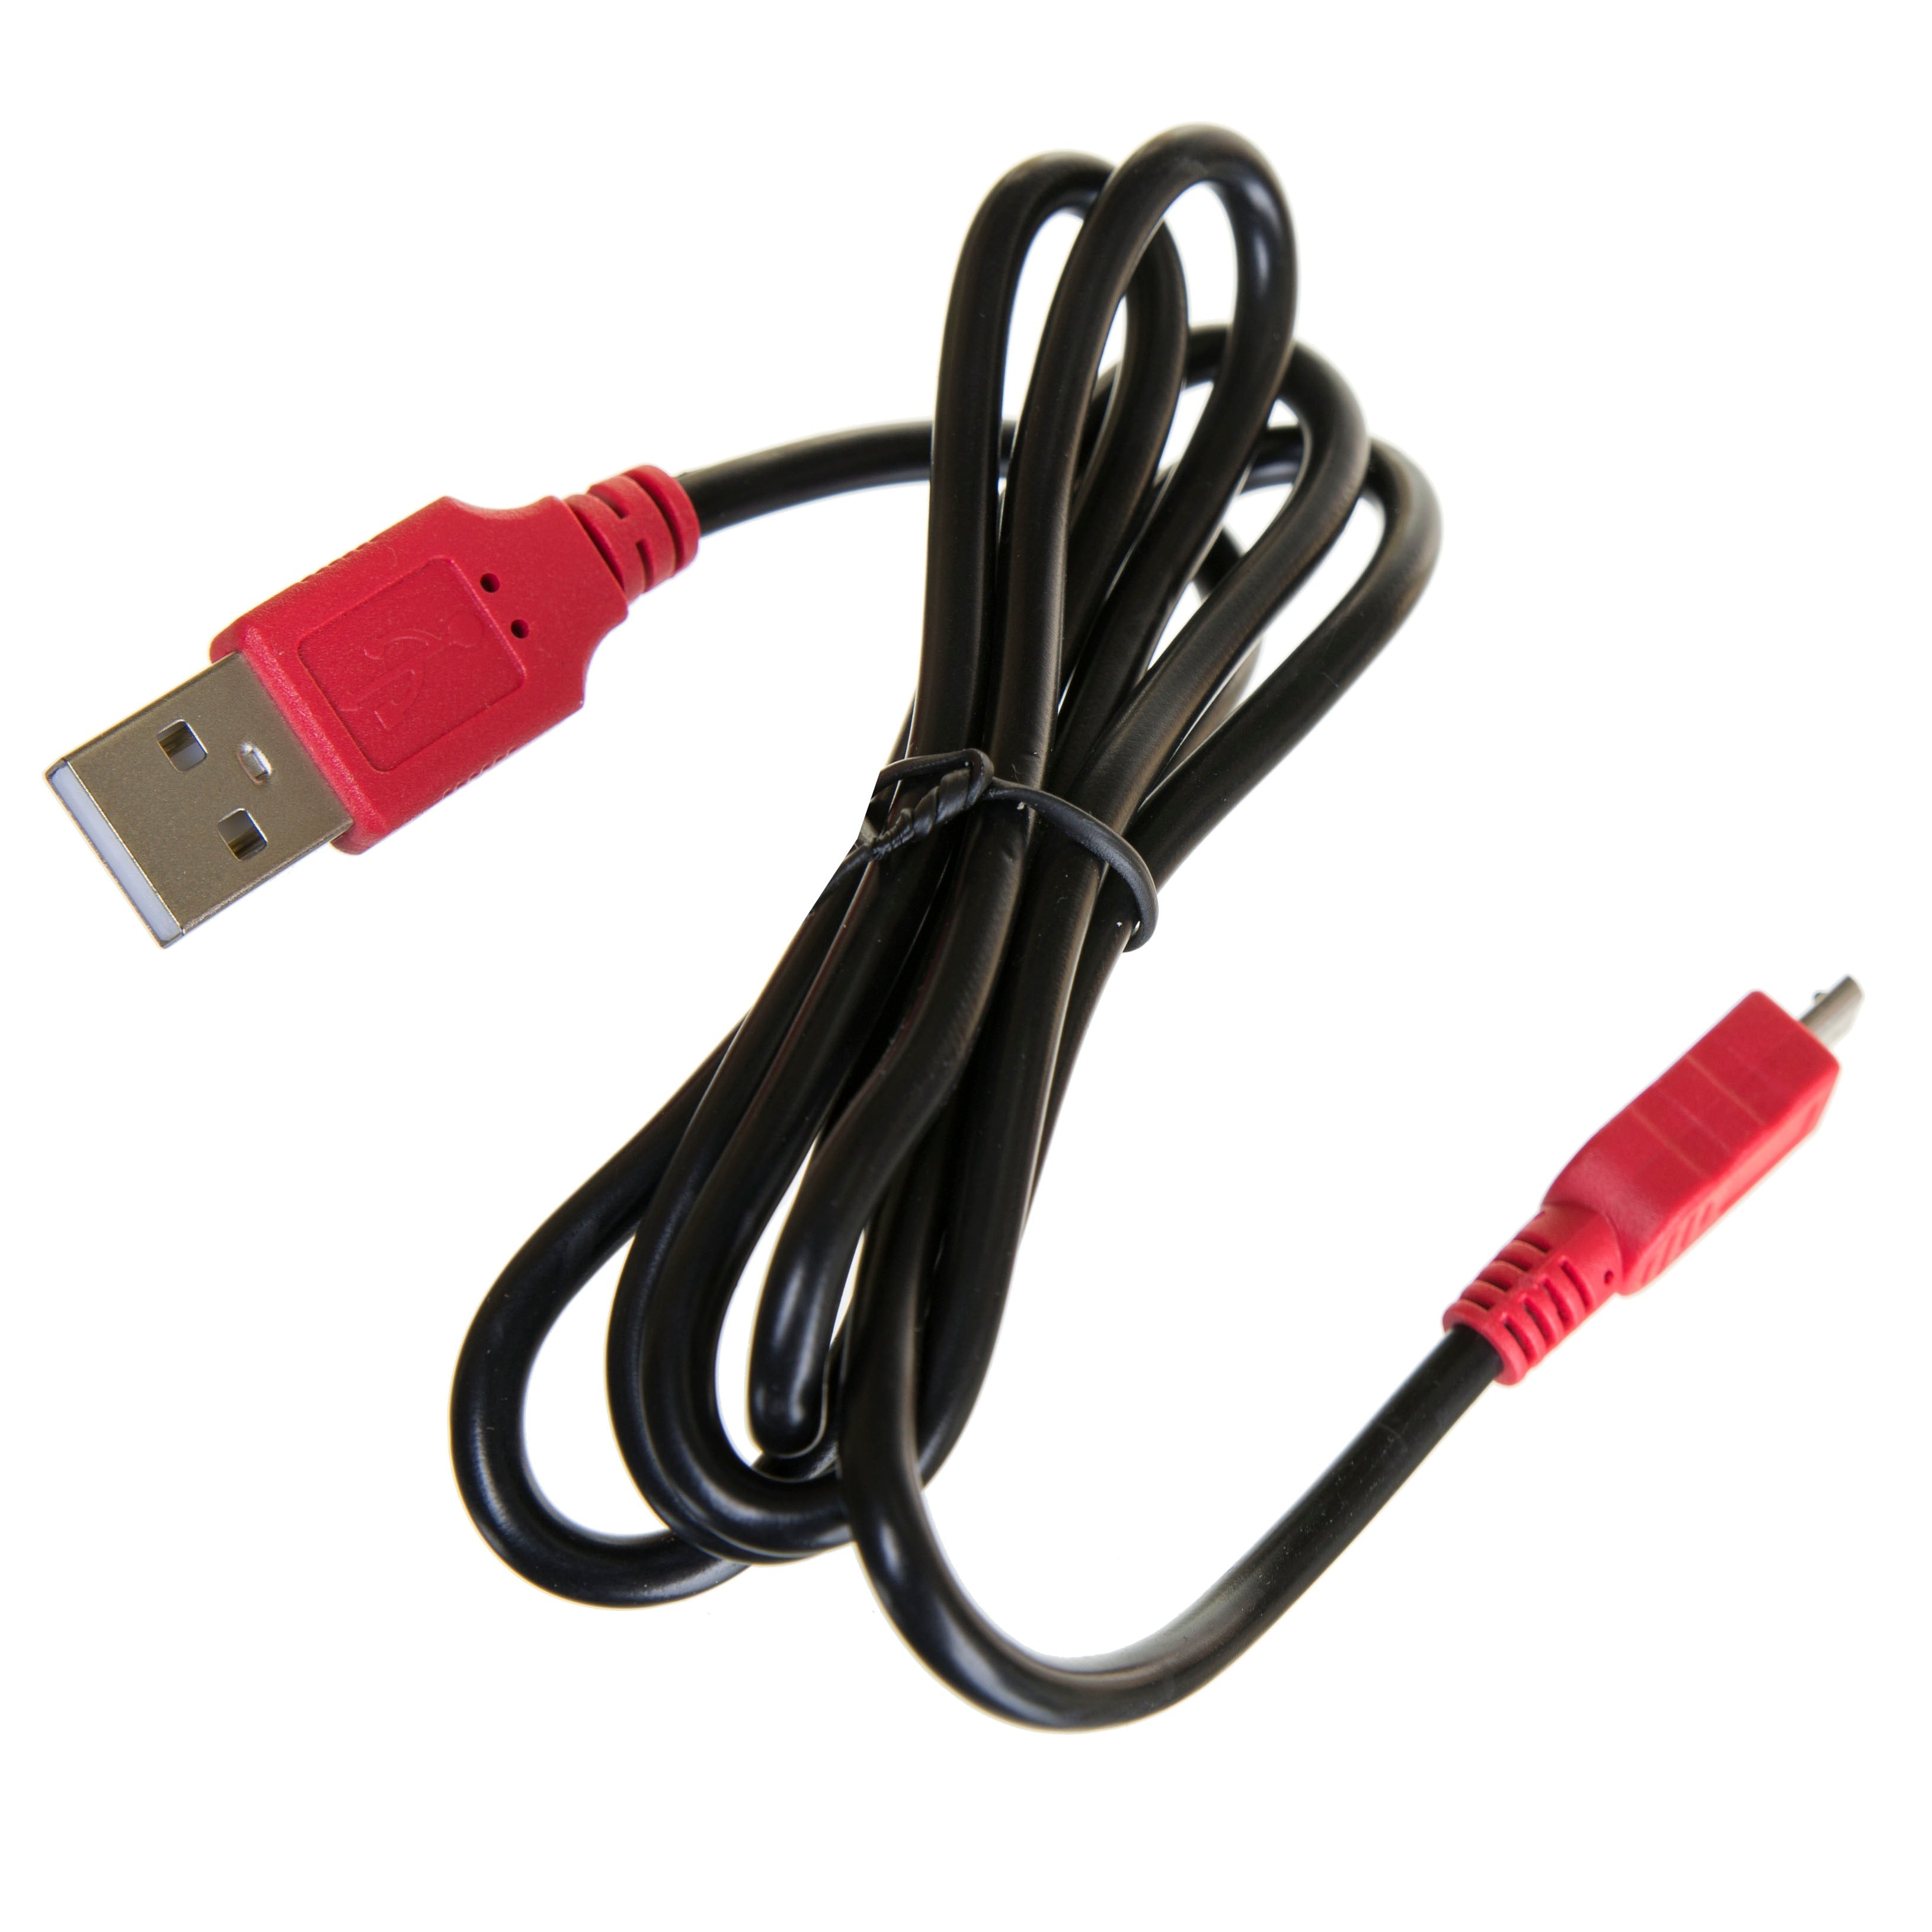 Cable USB ilimitado